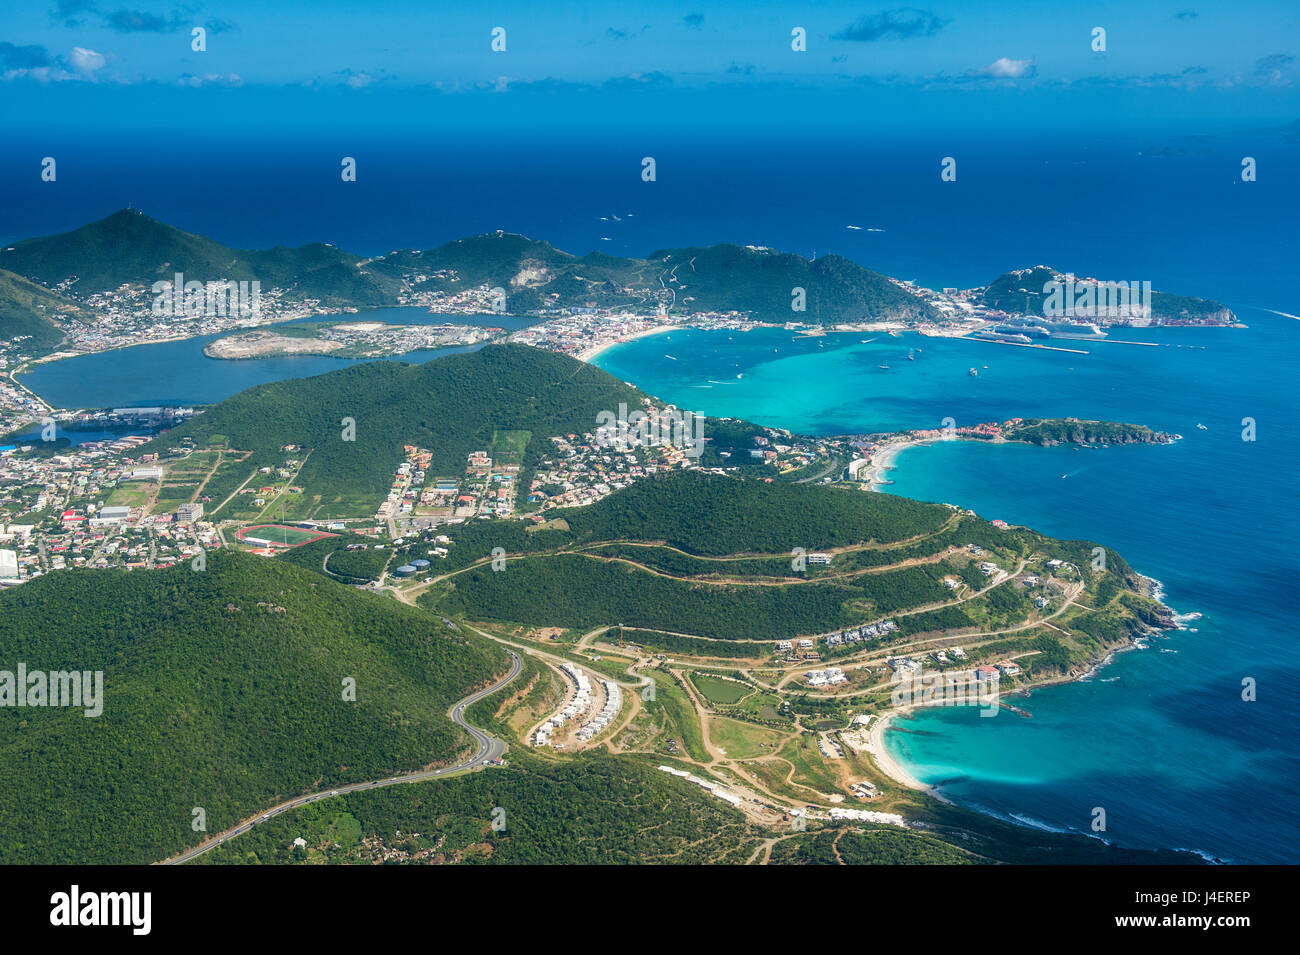 Vue aérienne de Sint Maarten, Antilles, Caraïbes, Amérique Centrale Banque D'Images